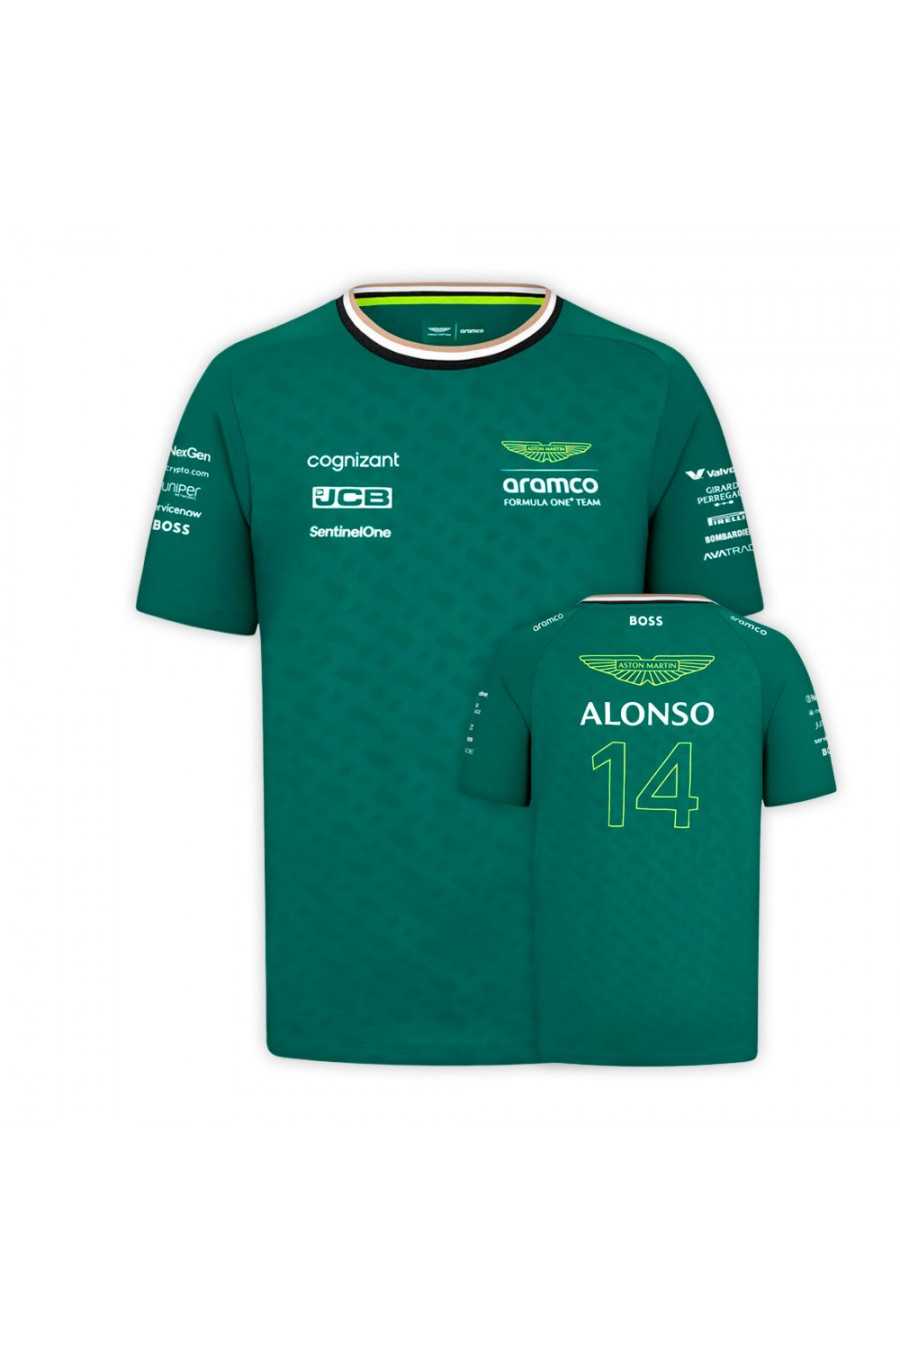 Camisetas: Fernando Alonso Aston Martin